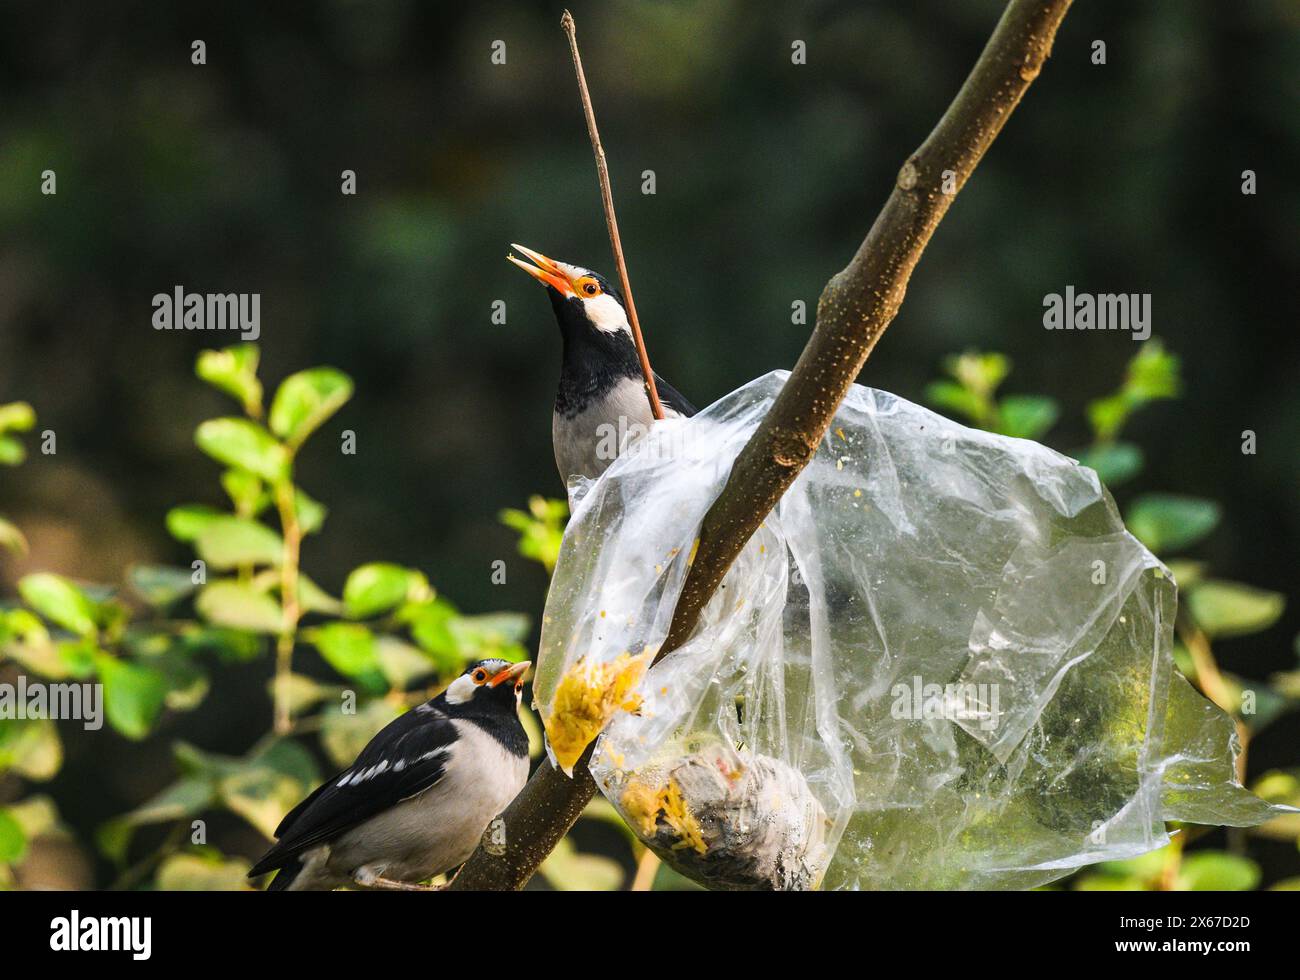 Ein Beutel mit Nahrung aus Polyethylen steckt auf einem Baum fest. Wild Indian Pied Myna (Gracupica contra) Vögel versuchen, das Plastik zu zerreißen und das Futter zu fressen, manchmal stecken ihre Schnäbel im Plastik fest. Es gibt ein nationales Verbot für diese Gegenstände. Tehatta, Westbengalen, Indien. Stockfoto